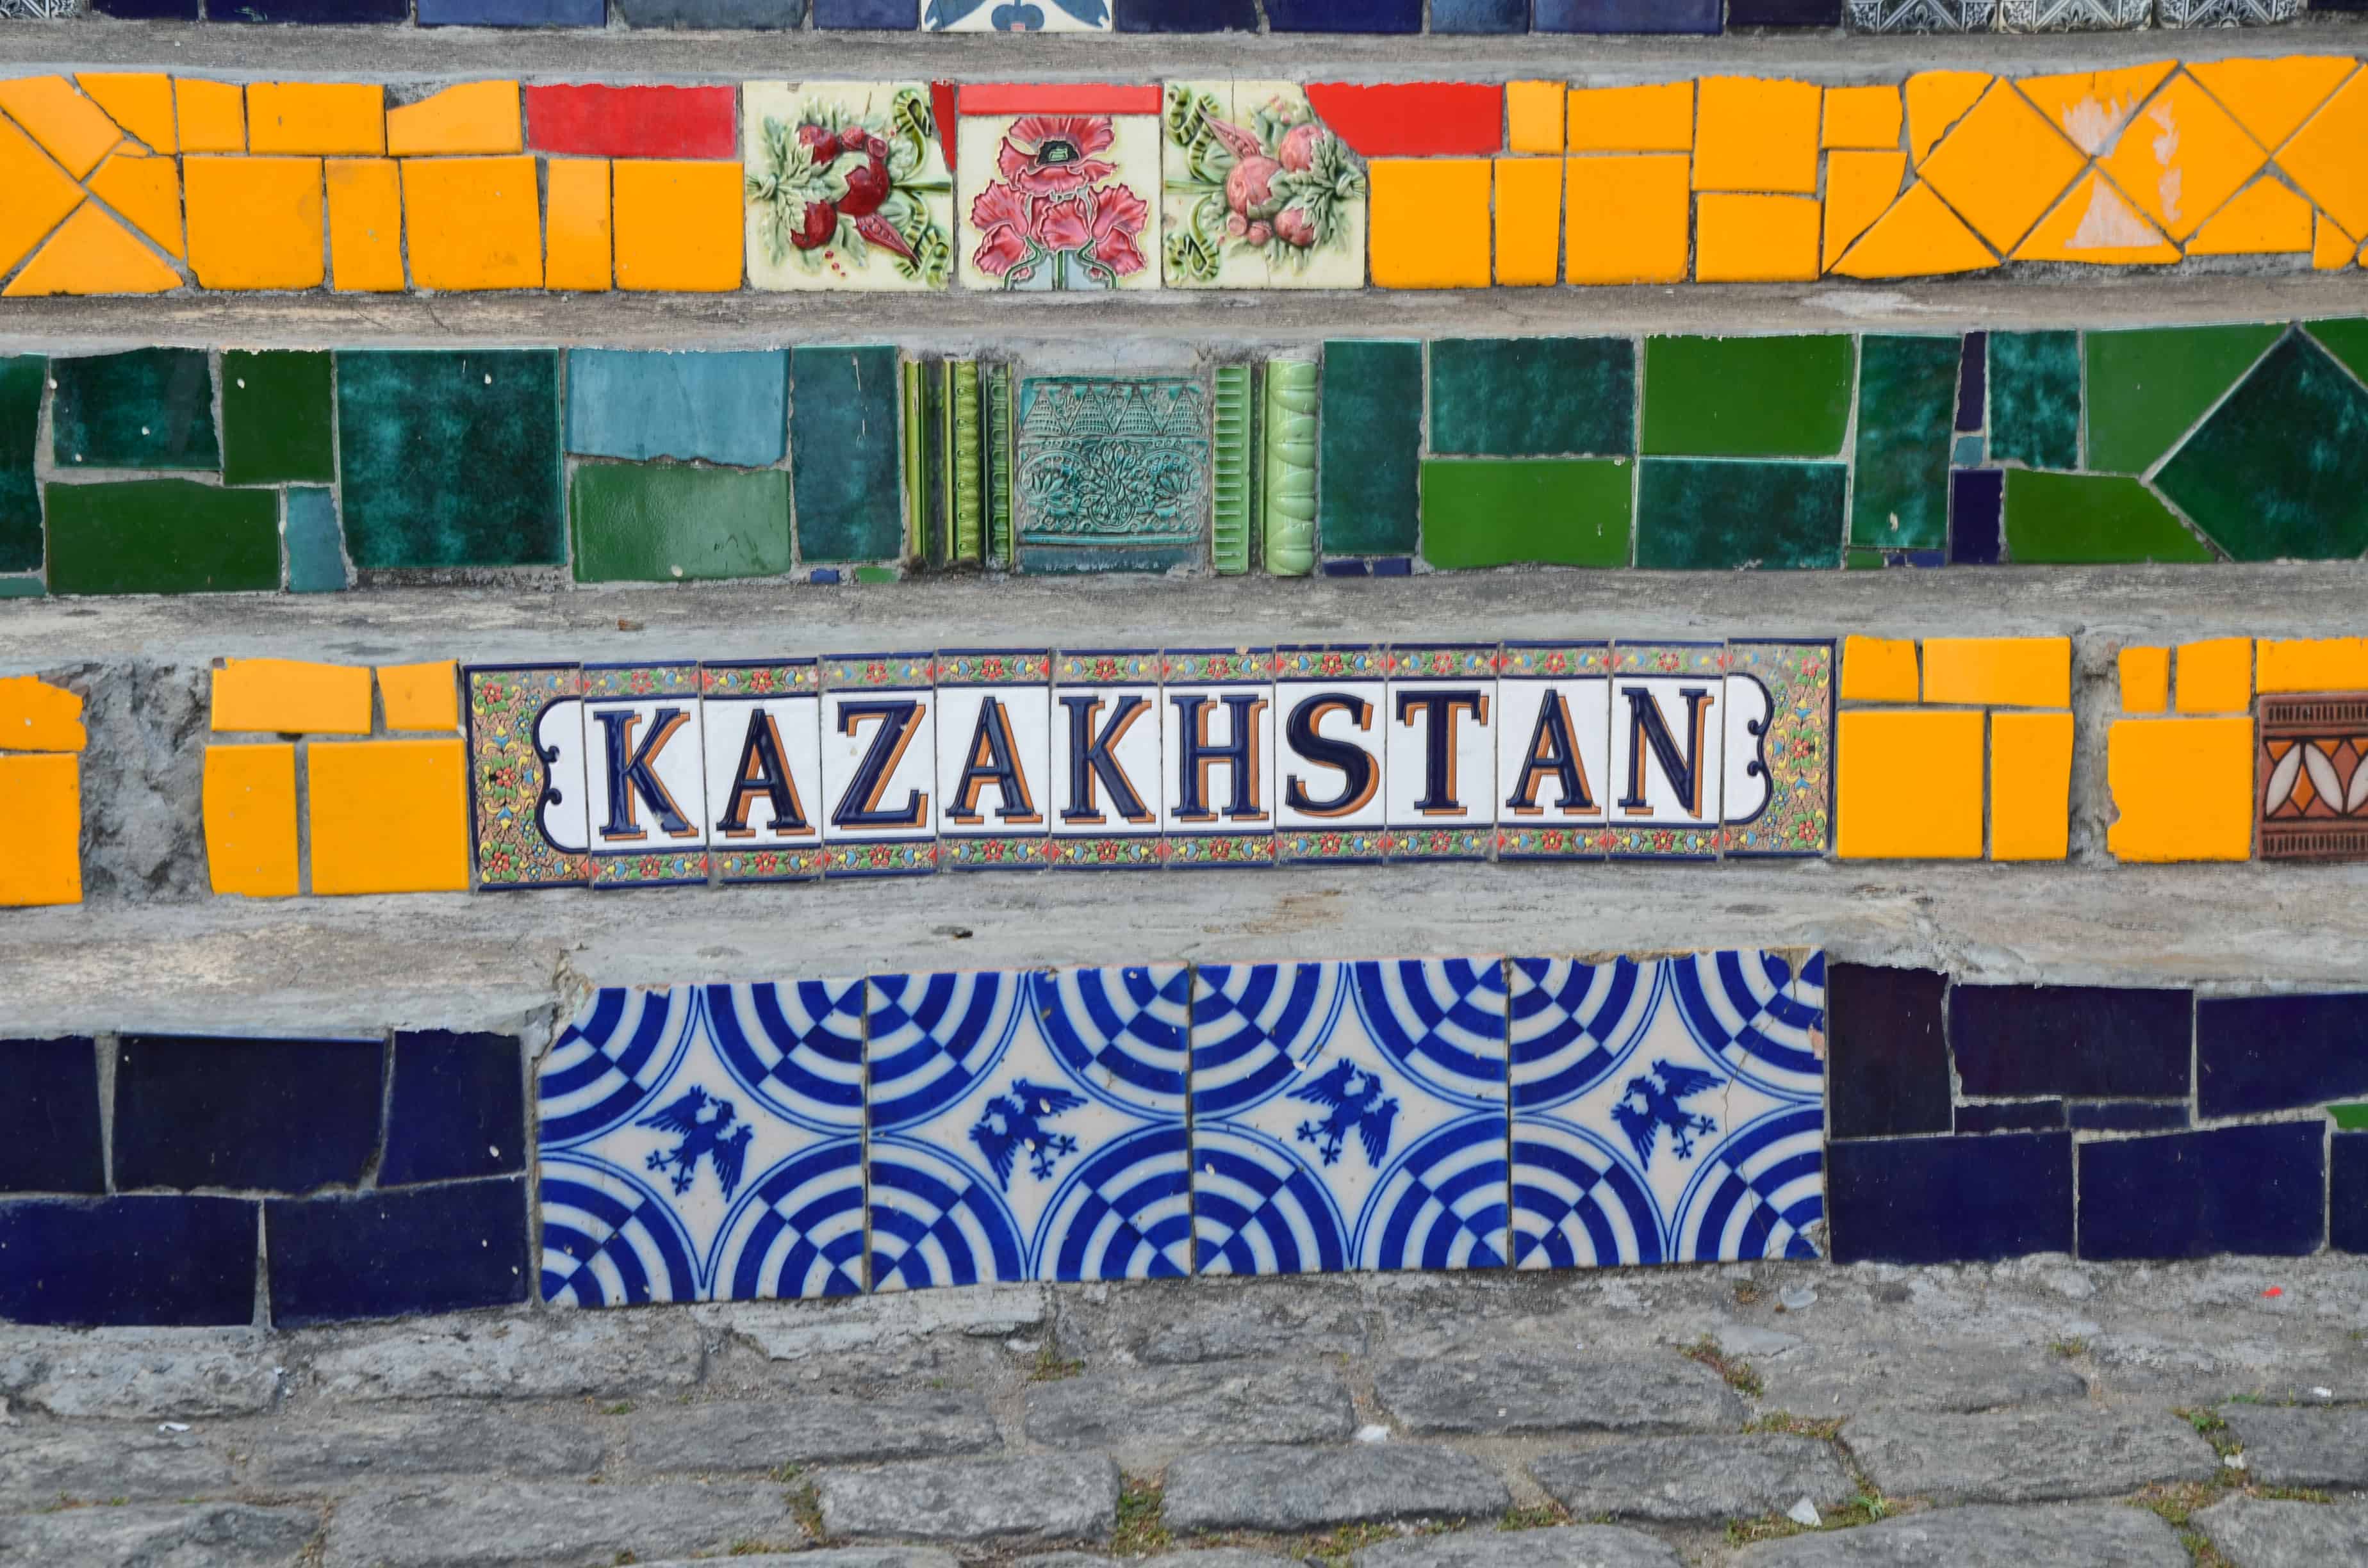 Kazakhstan tiles at Escadaria Selarón in Rio de Janeiro, Brazil